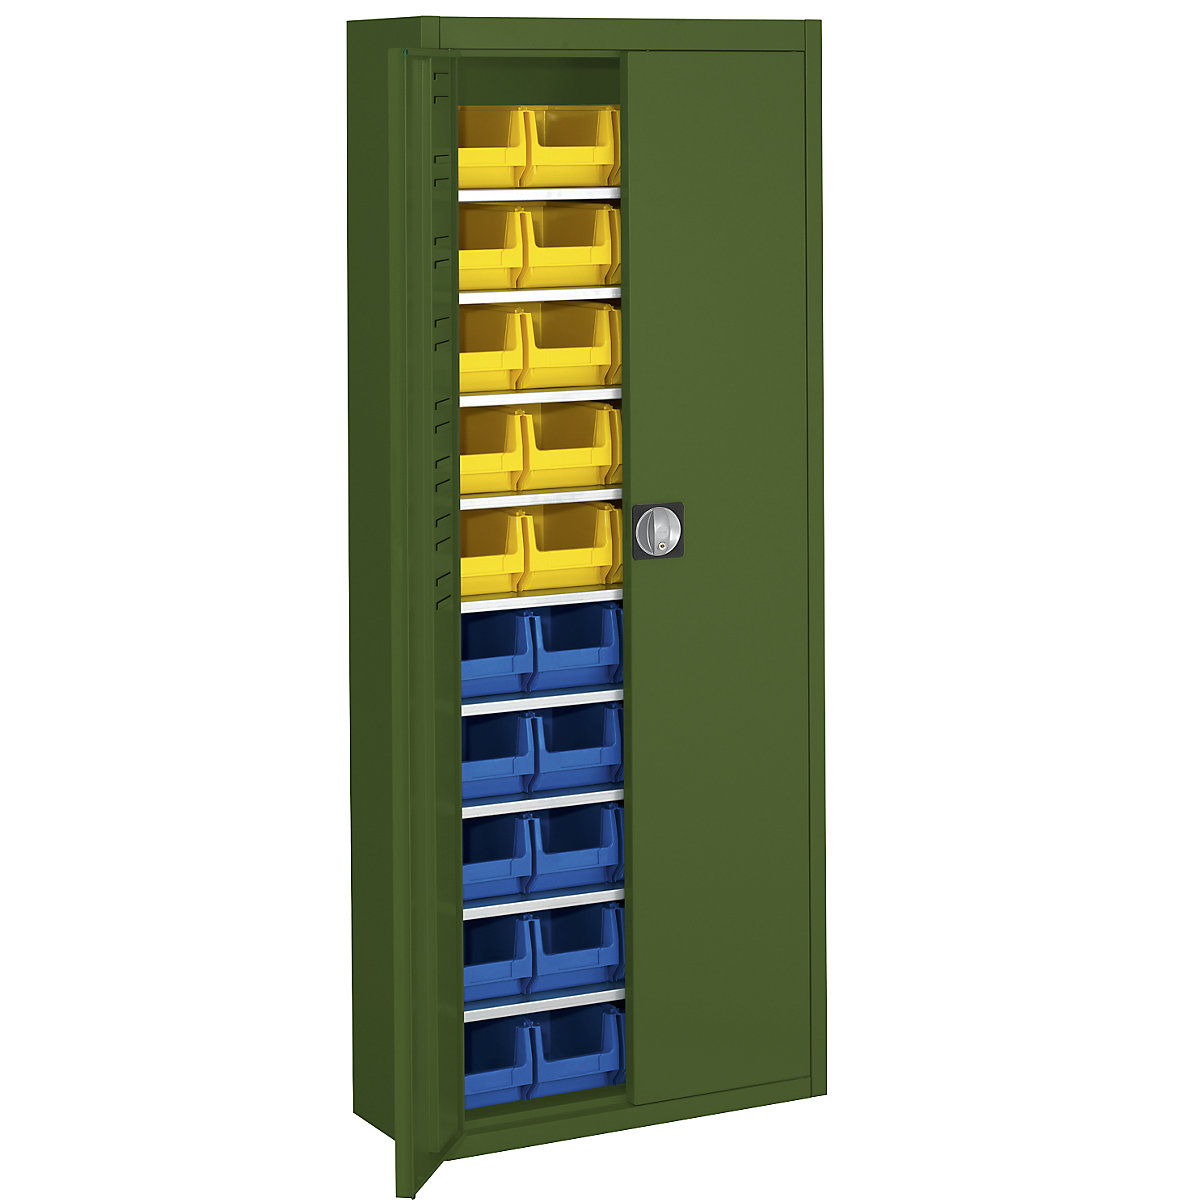 Skladová skříň s přepravkami s viditelným obsahem – mauser, v x š x h 1740 x 680 x 280 mm, jednobarevné, zelená, 40 přepravek-15